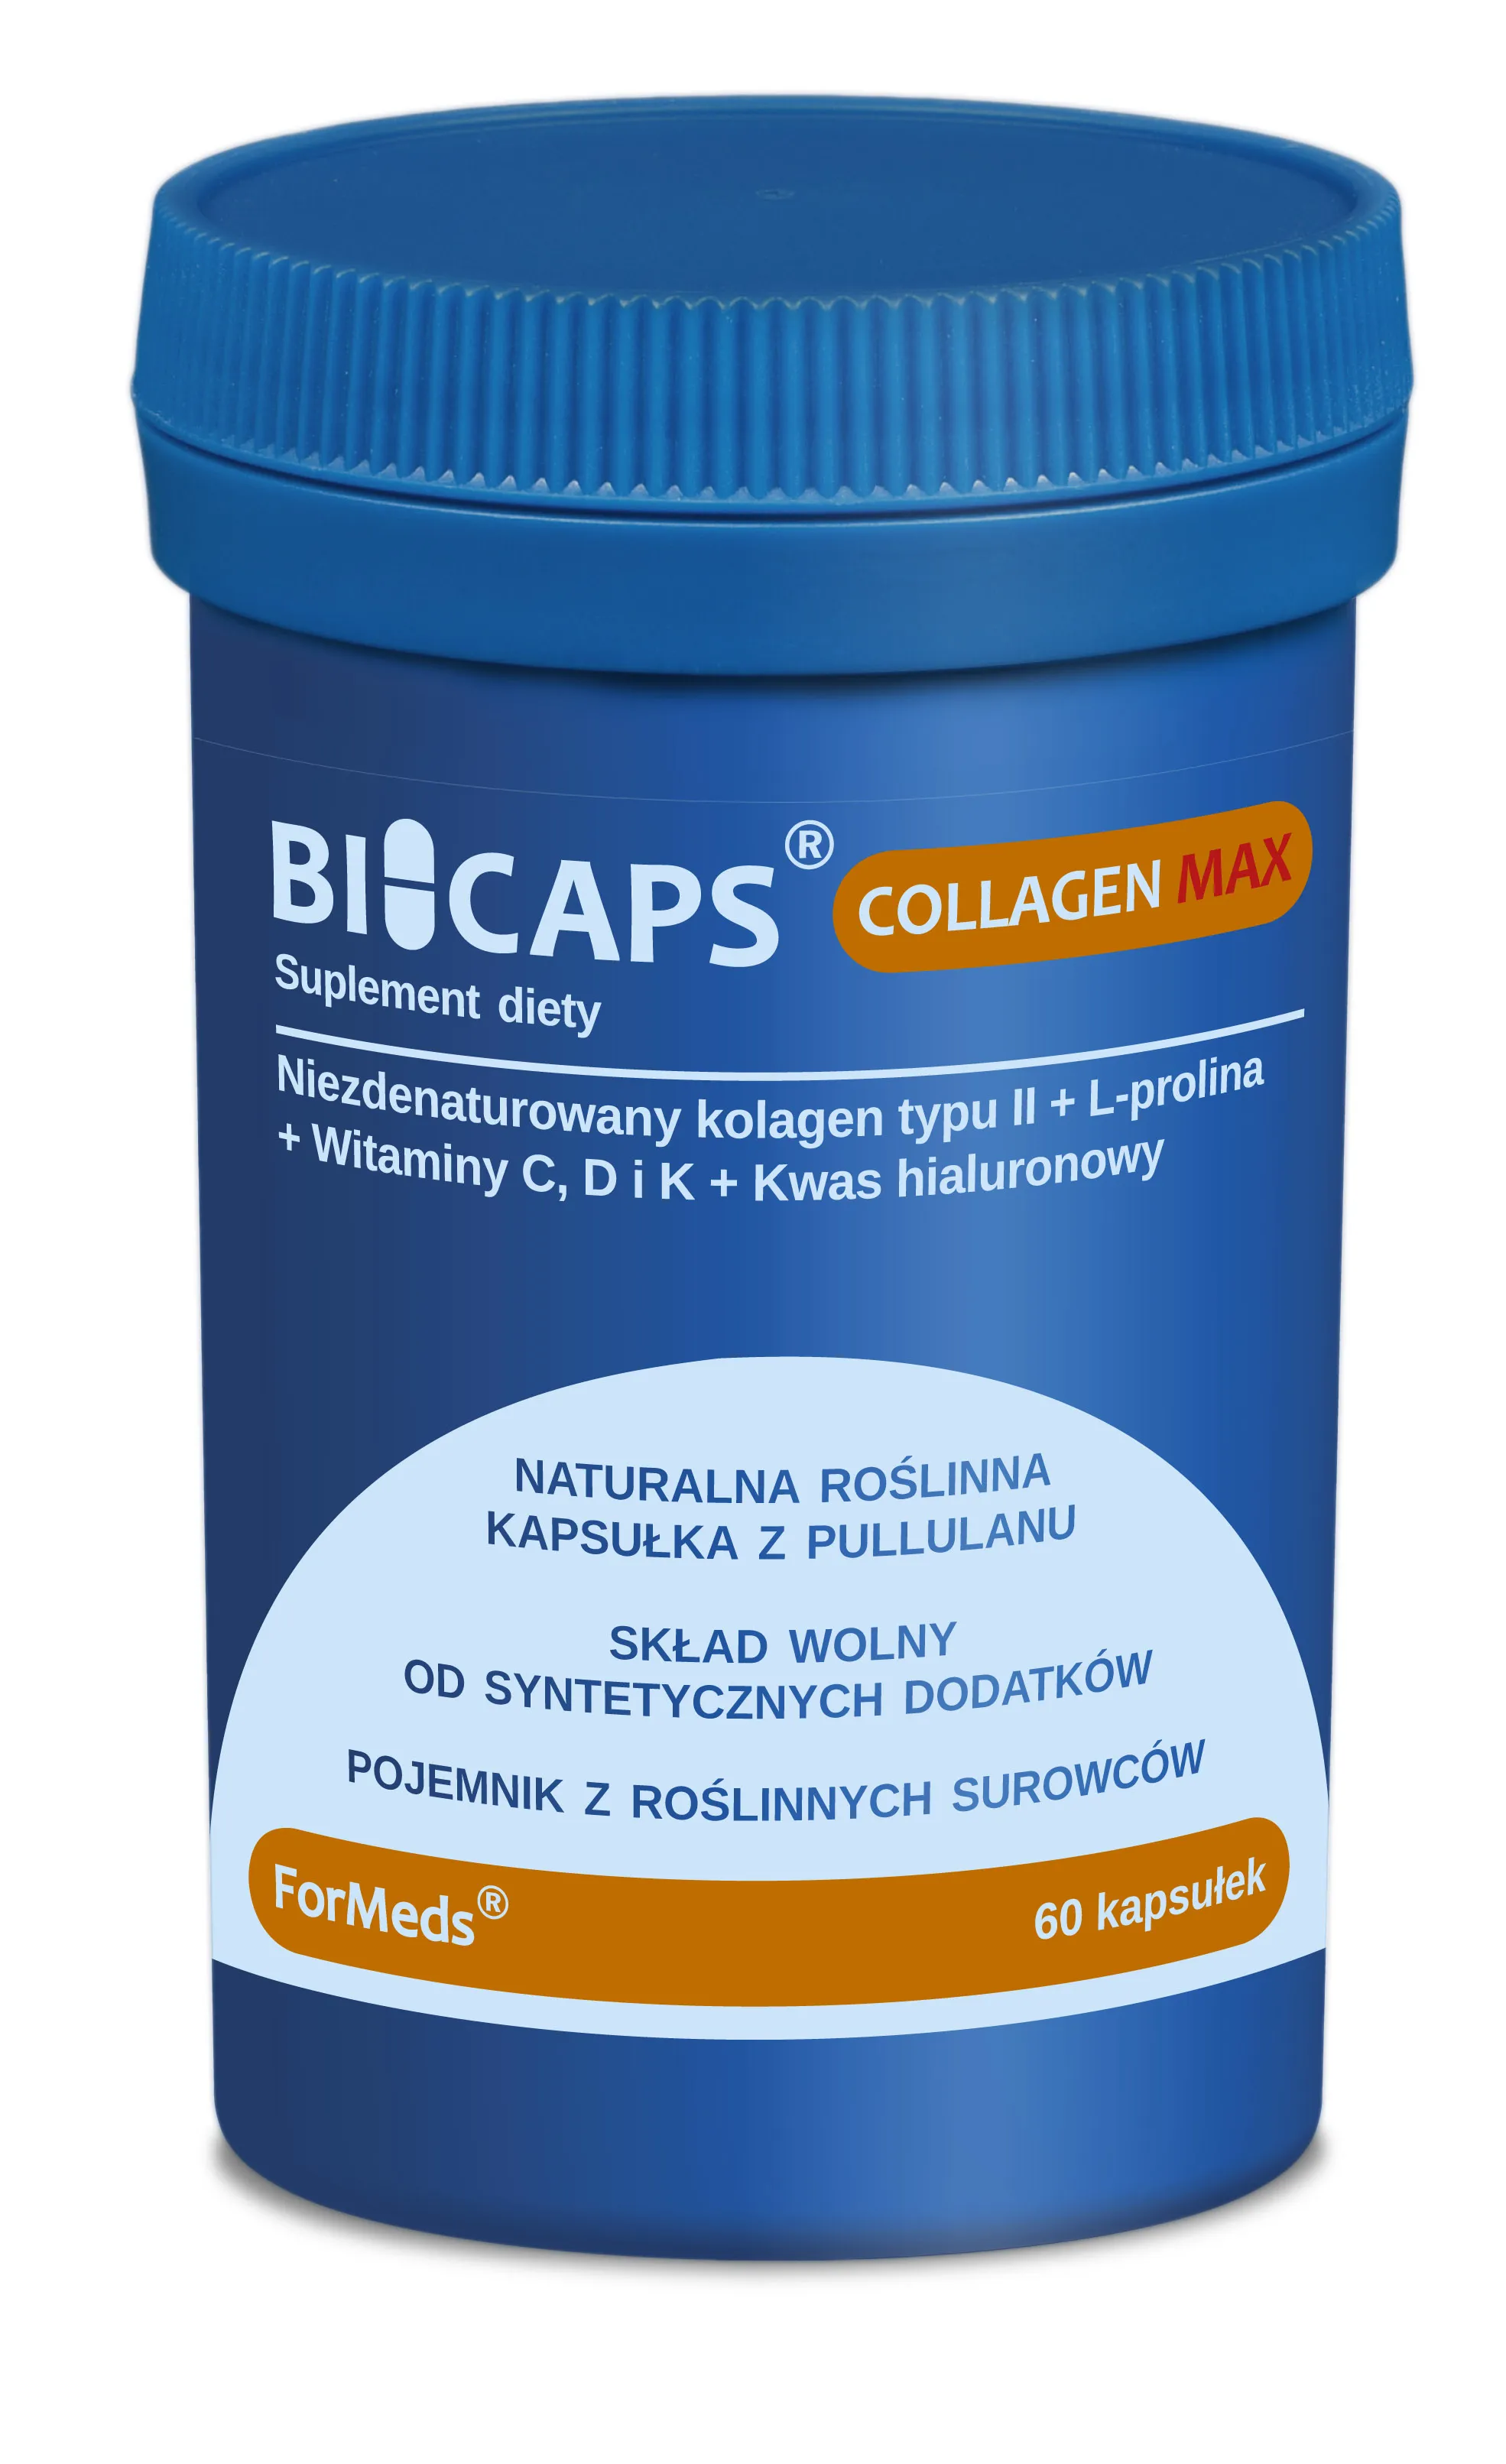 ForMeds Bicaps Collagen Max, suplement diety, 60 kapsułek